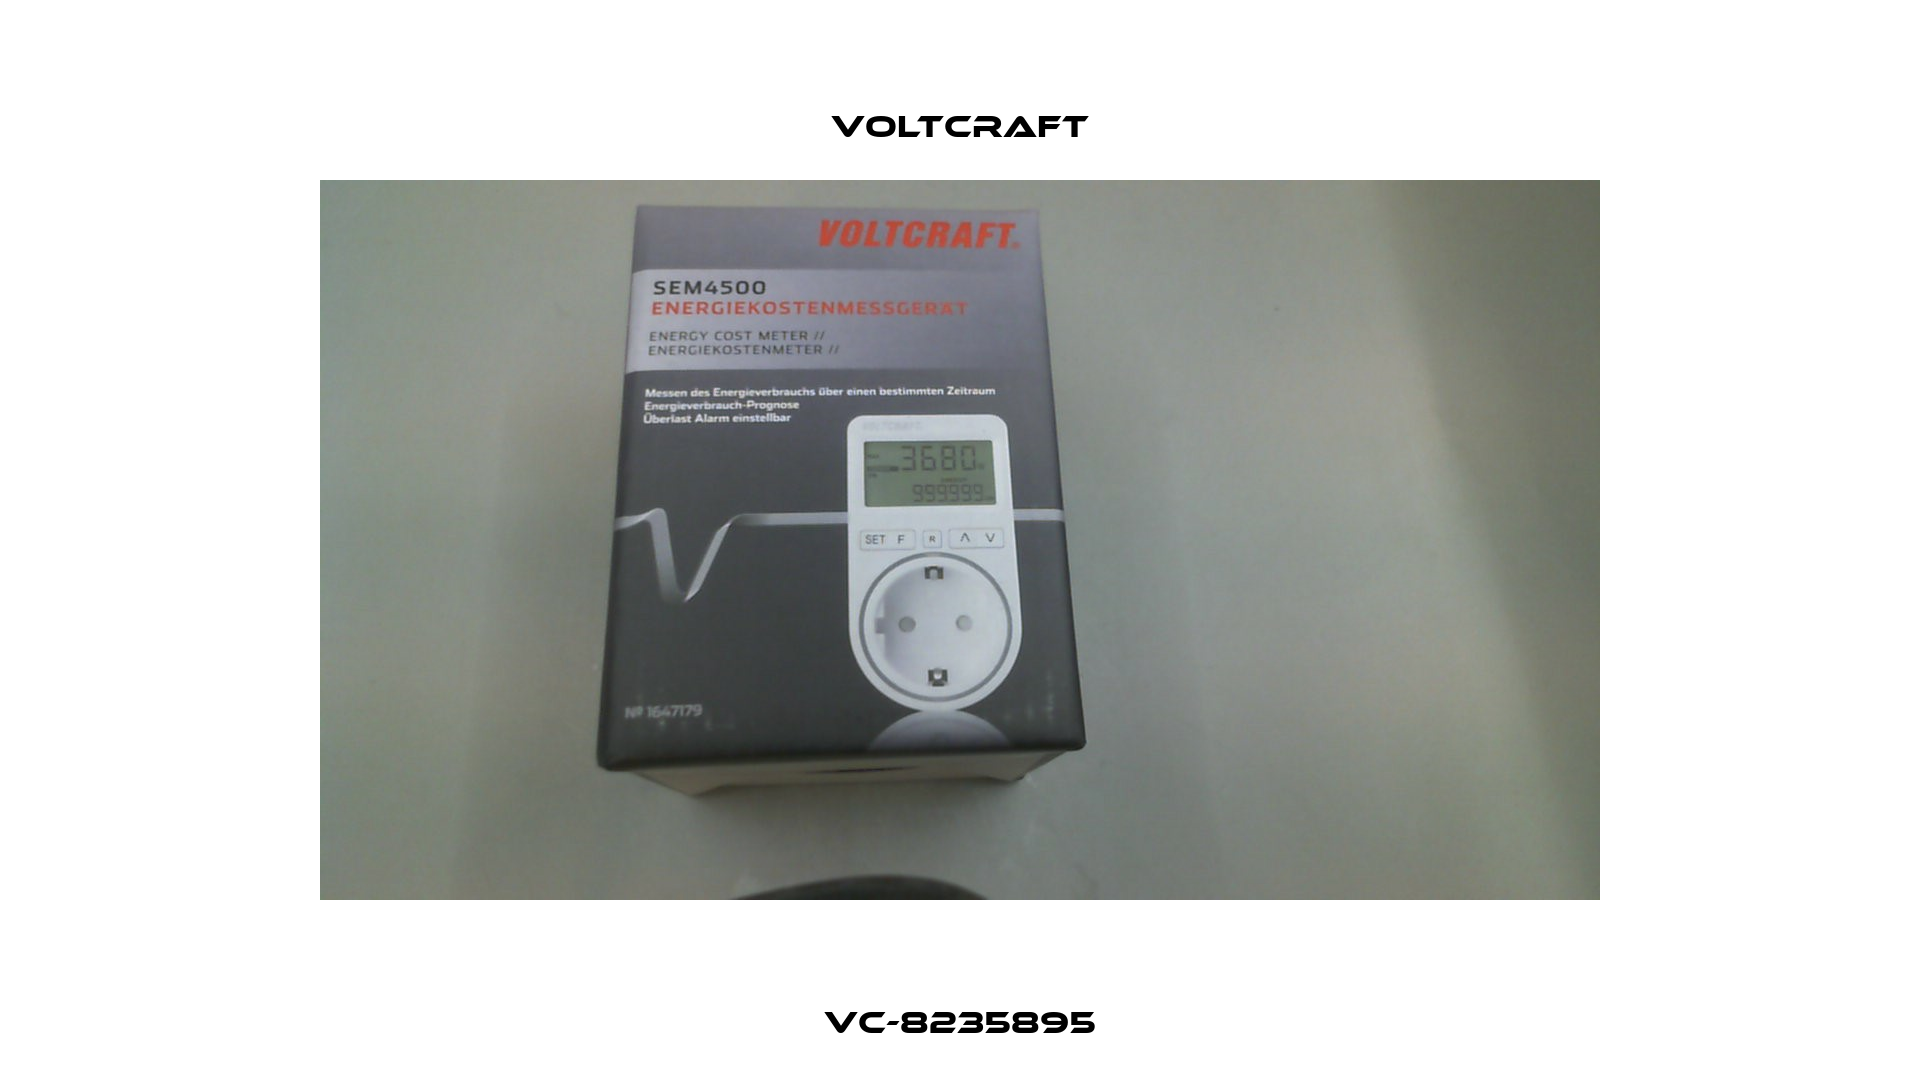 VC-8235895 Voltcraft